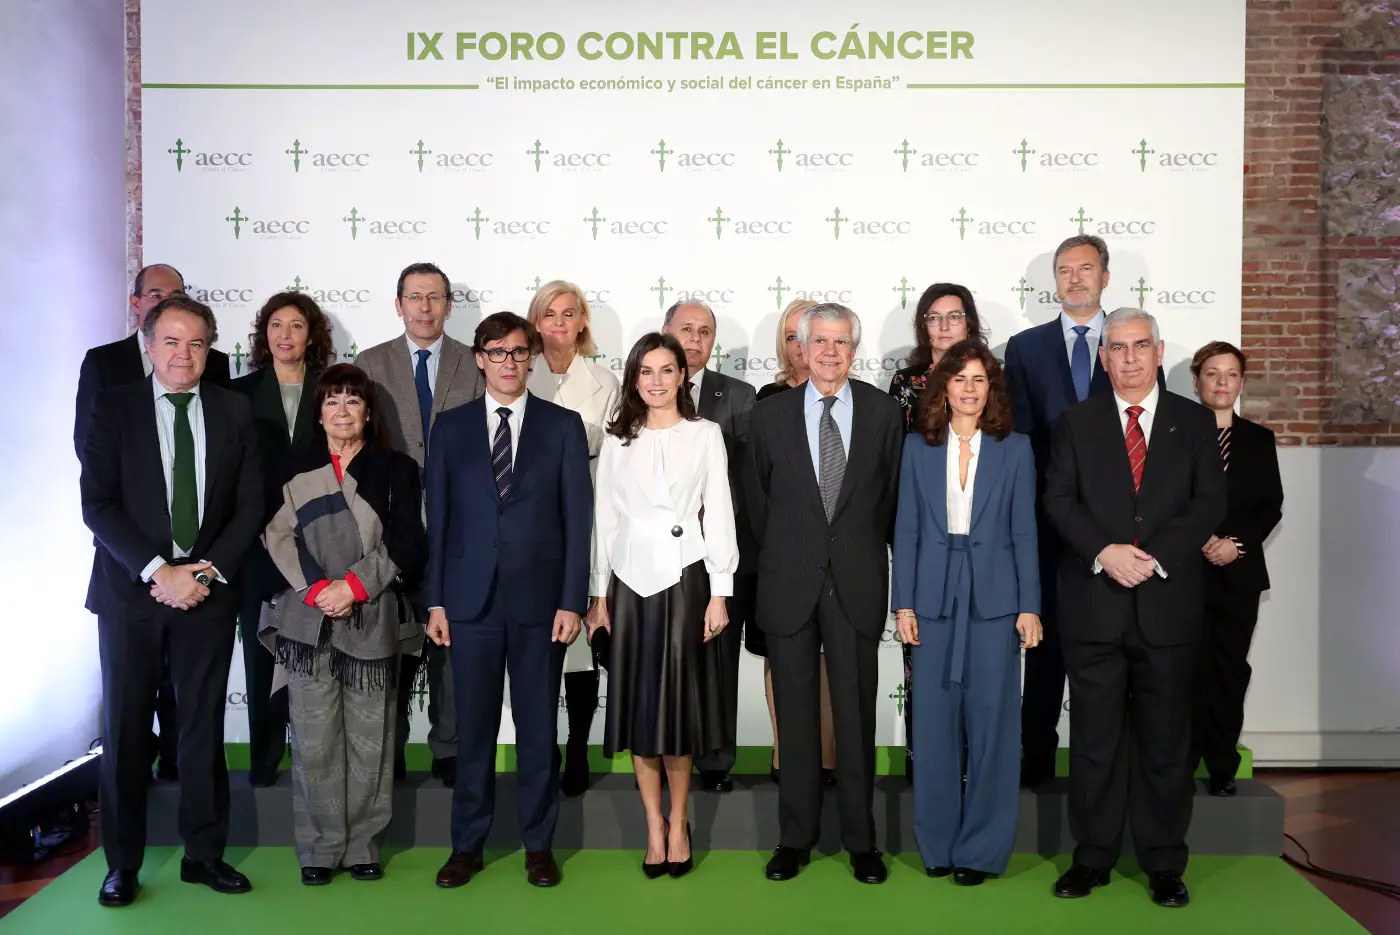 Queen Letizia at Forum against Cancer